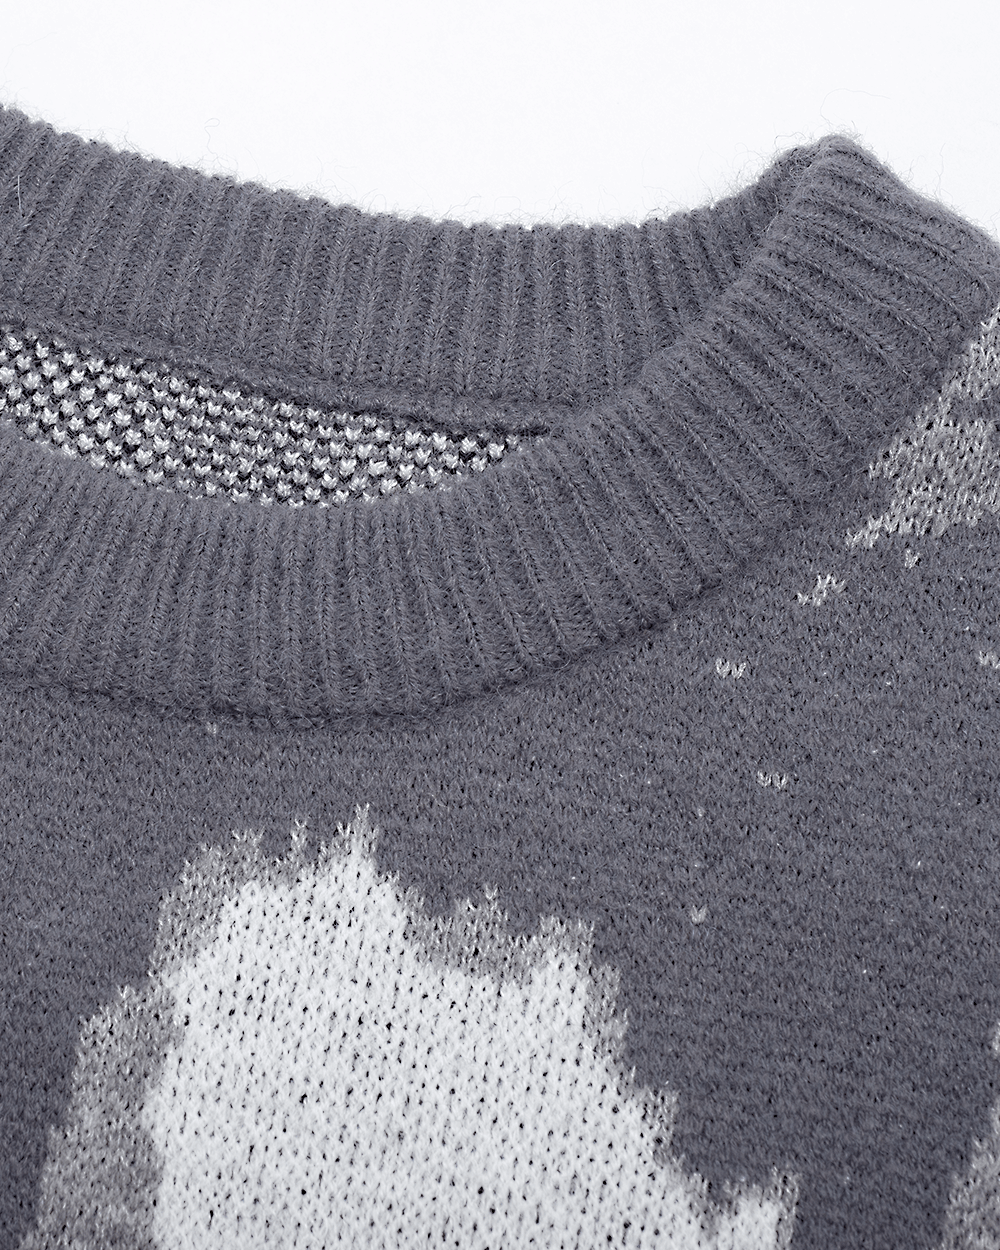 TAKA ORIGINAL LIMITED - Off The Label fog knit jumper